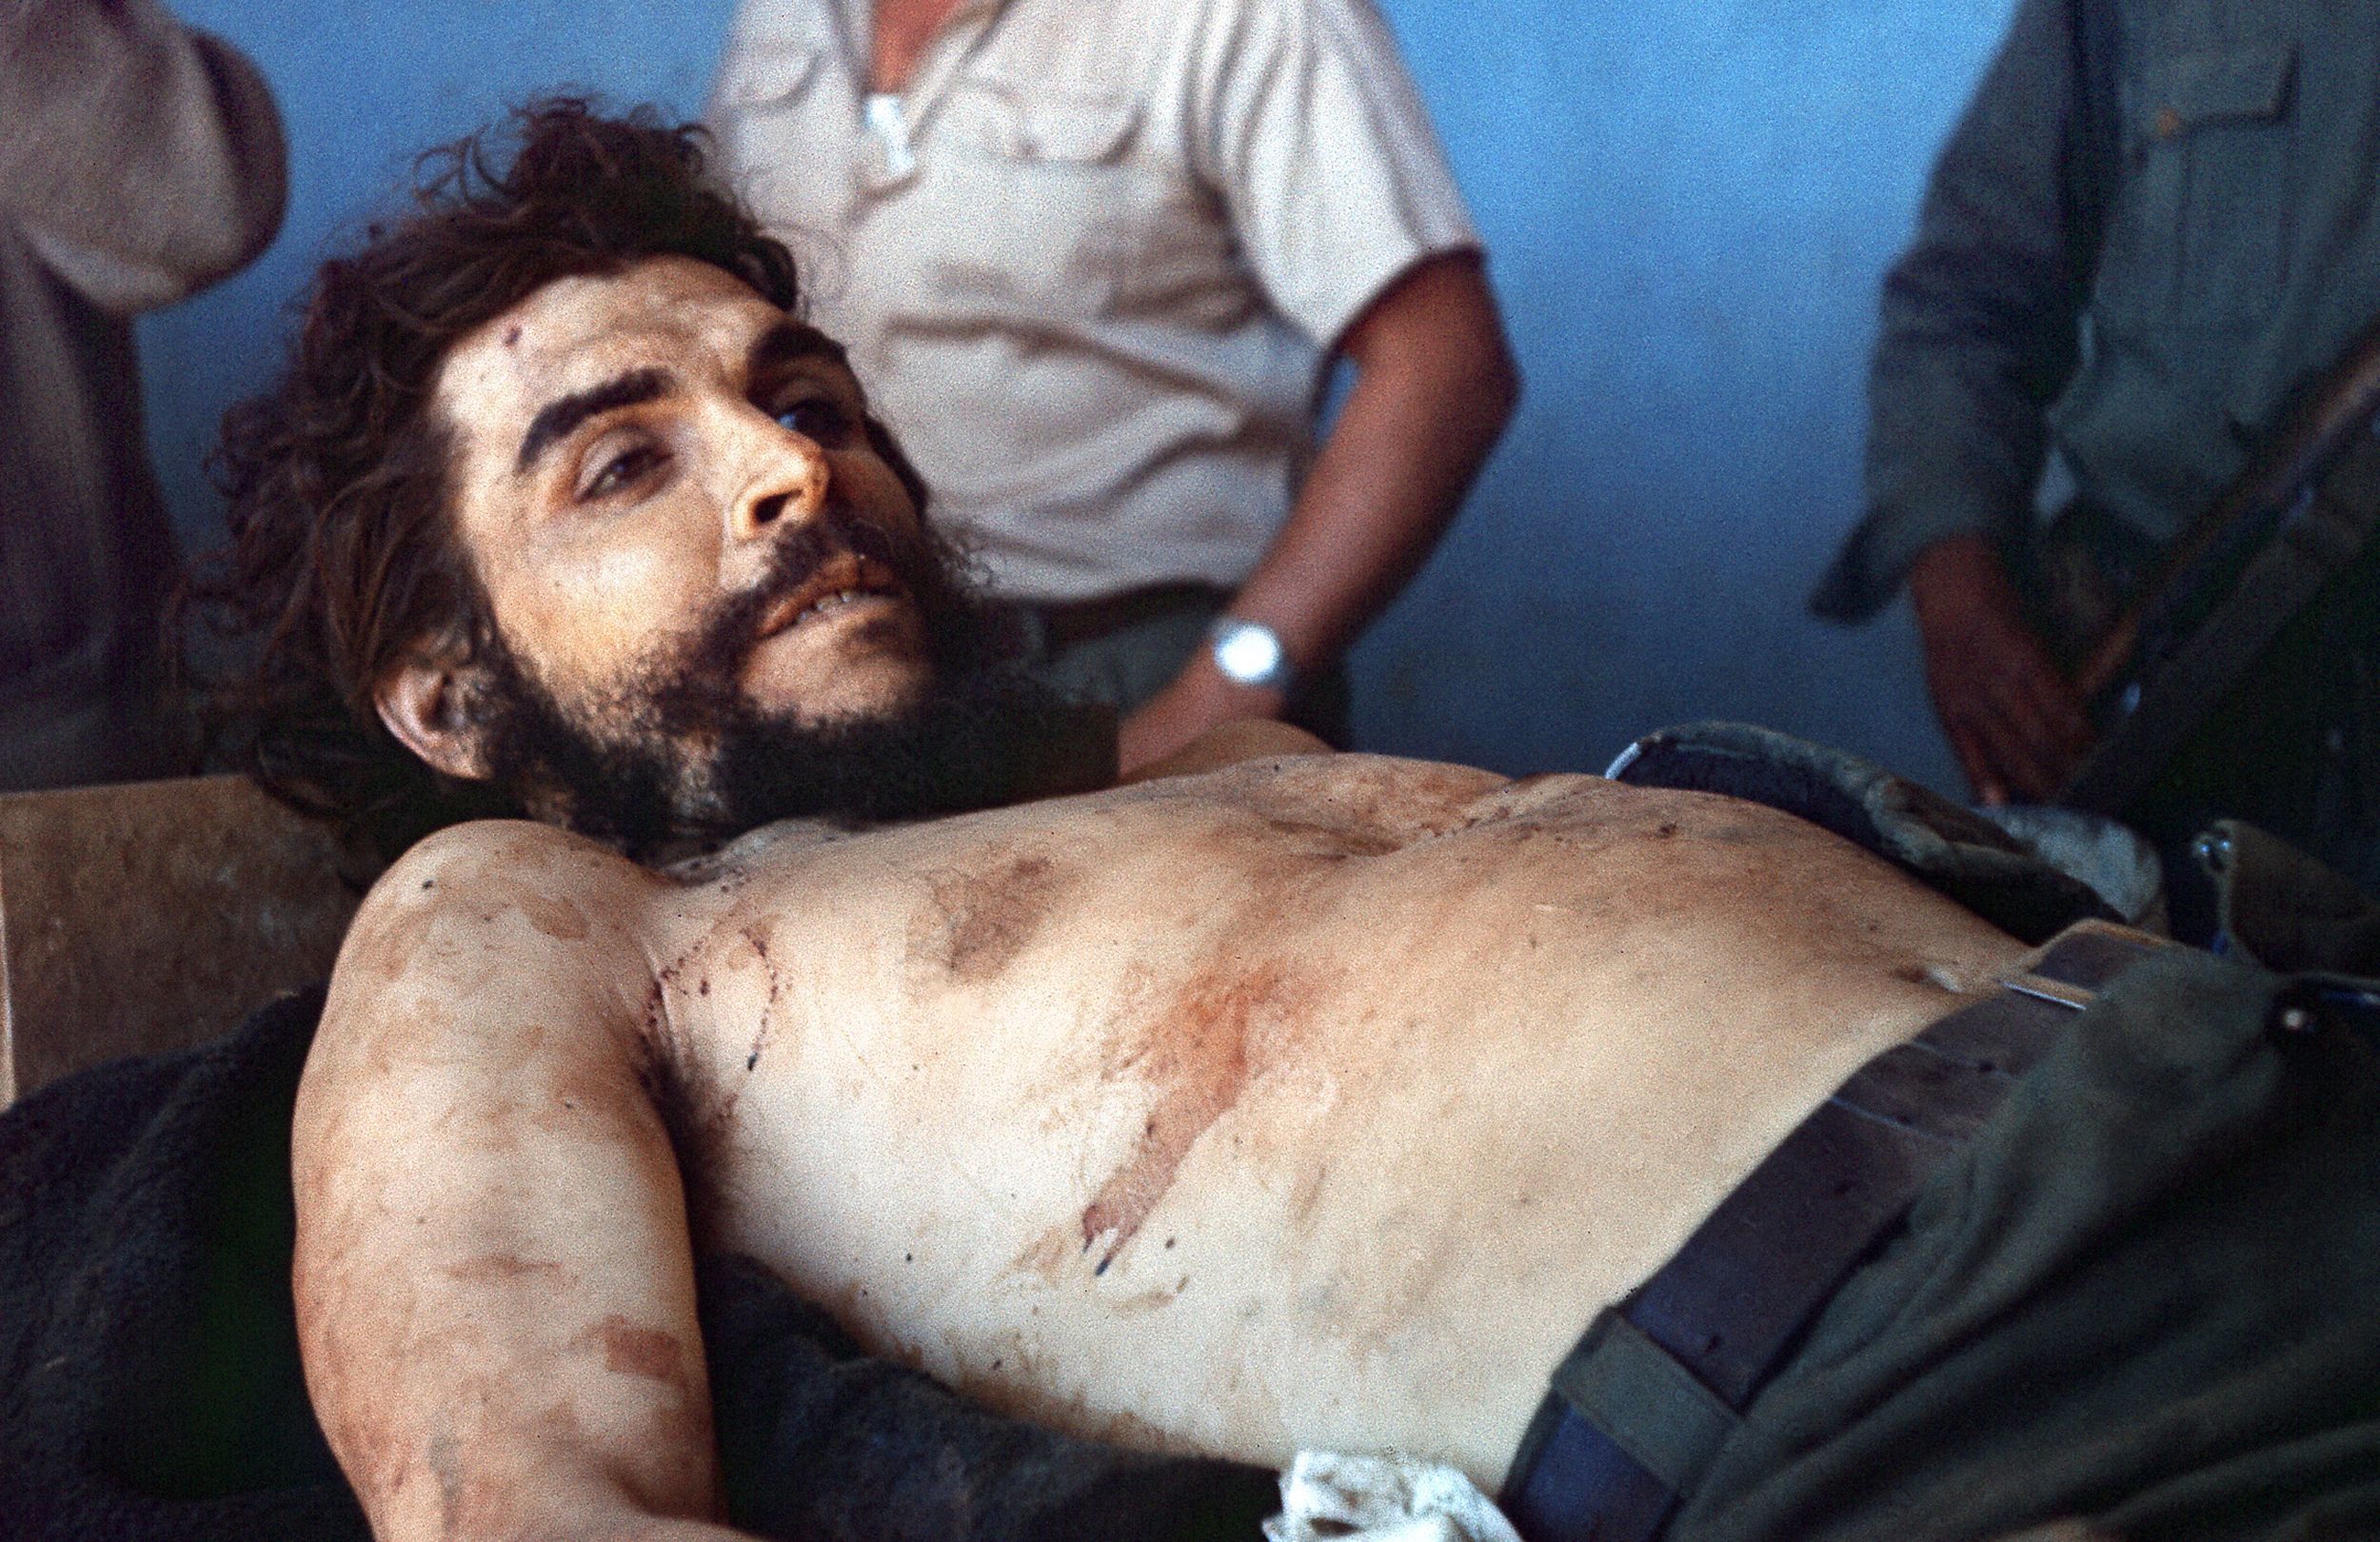 Foto de archivo tomada el 10 de octubre de 1967, el cuerpo de Ernesto "Che" Guevara, el héroe de origen argentino de los revolucionarios latinoamericanos, es expuesto al público un día después de ser asesinado, en Vallegrande, Bolivia.